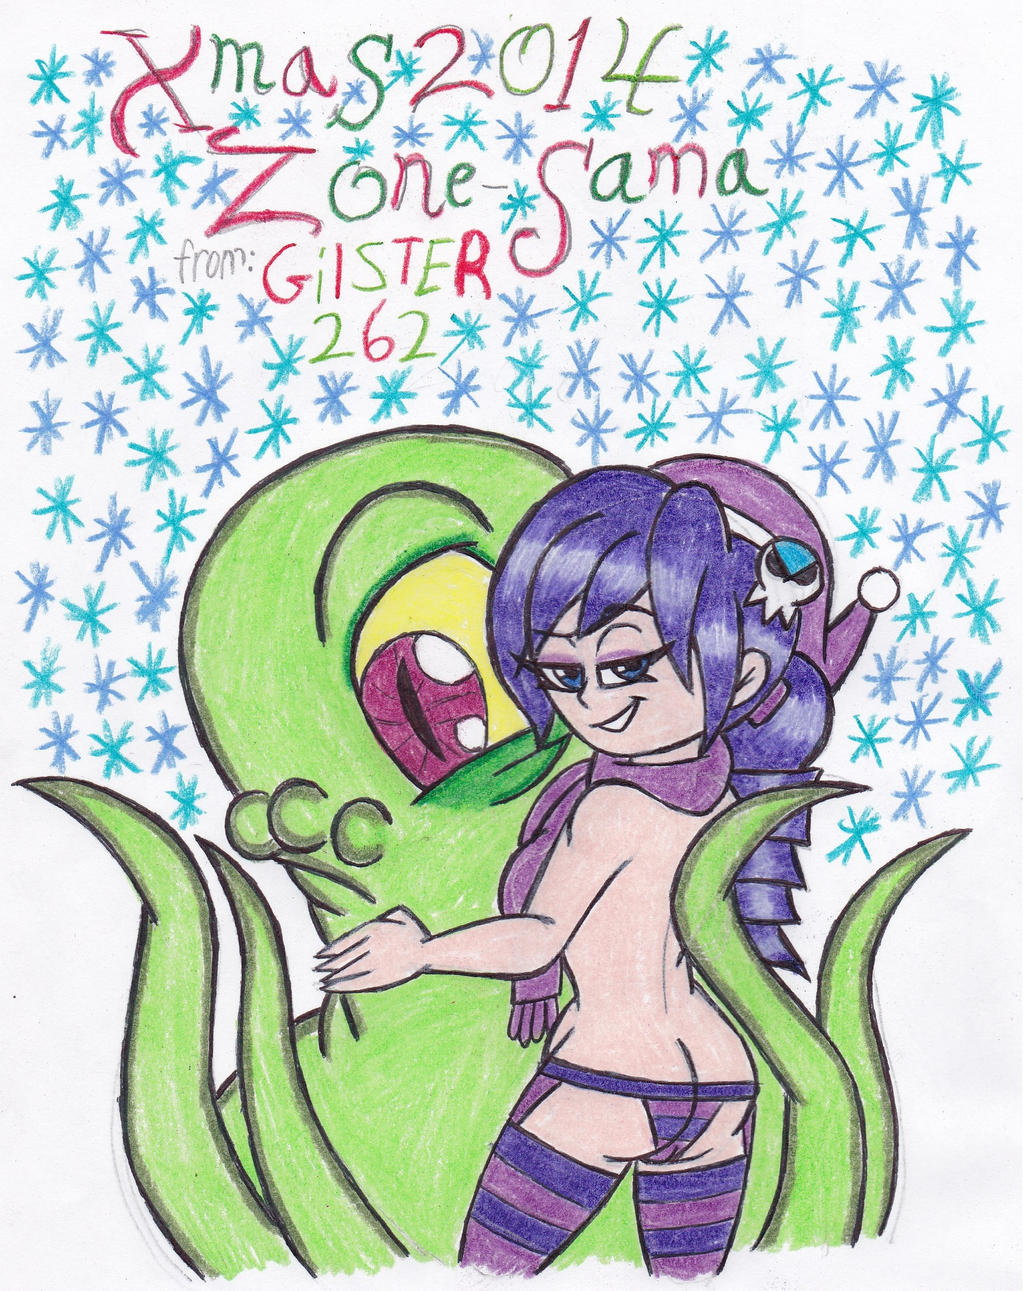 Xmas 2014: Zone-Sama